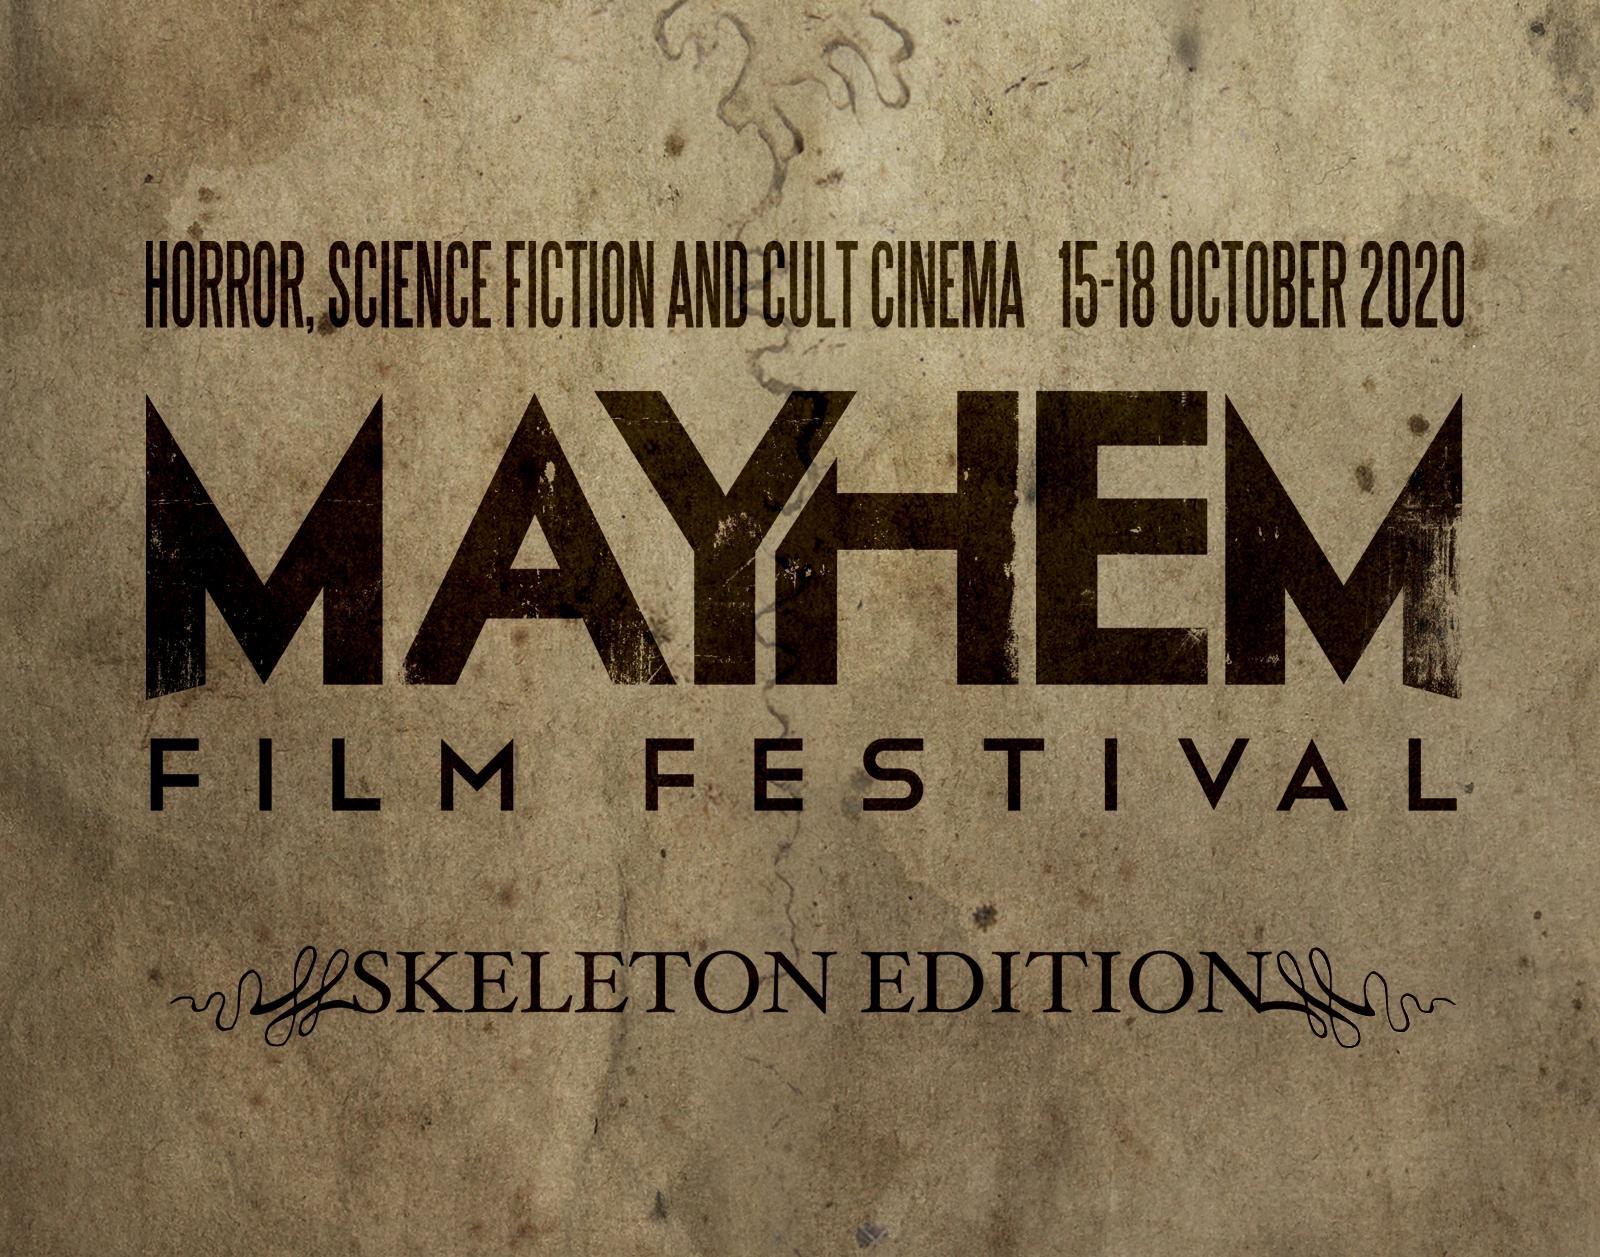 Mayhem Film Festival announces physical screenings for skeleton edition